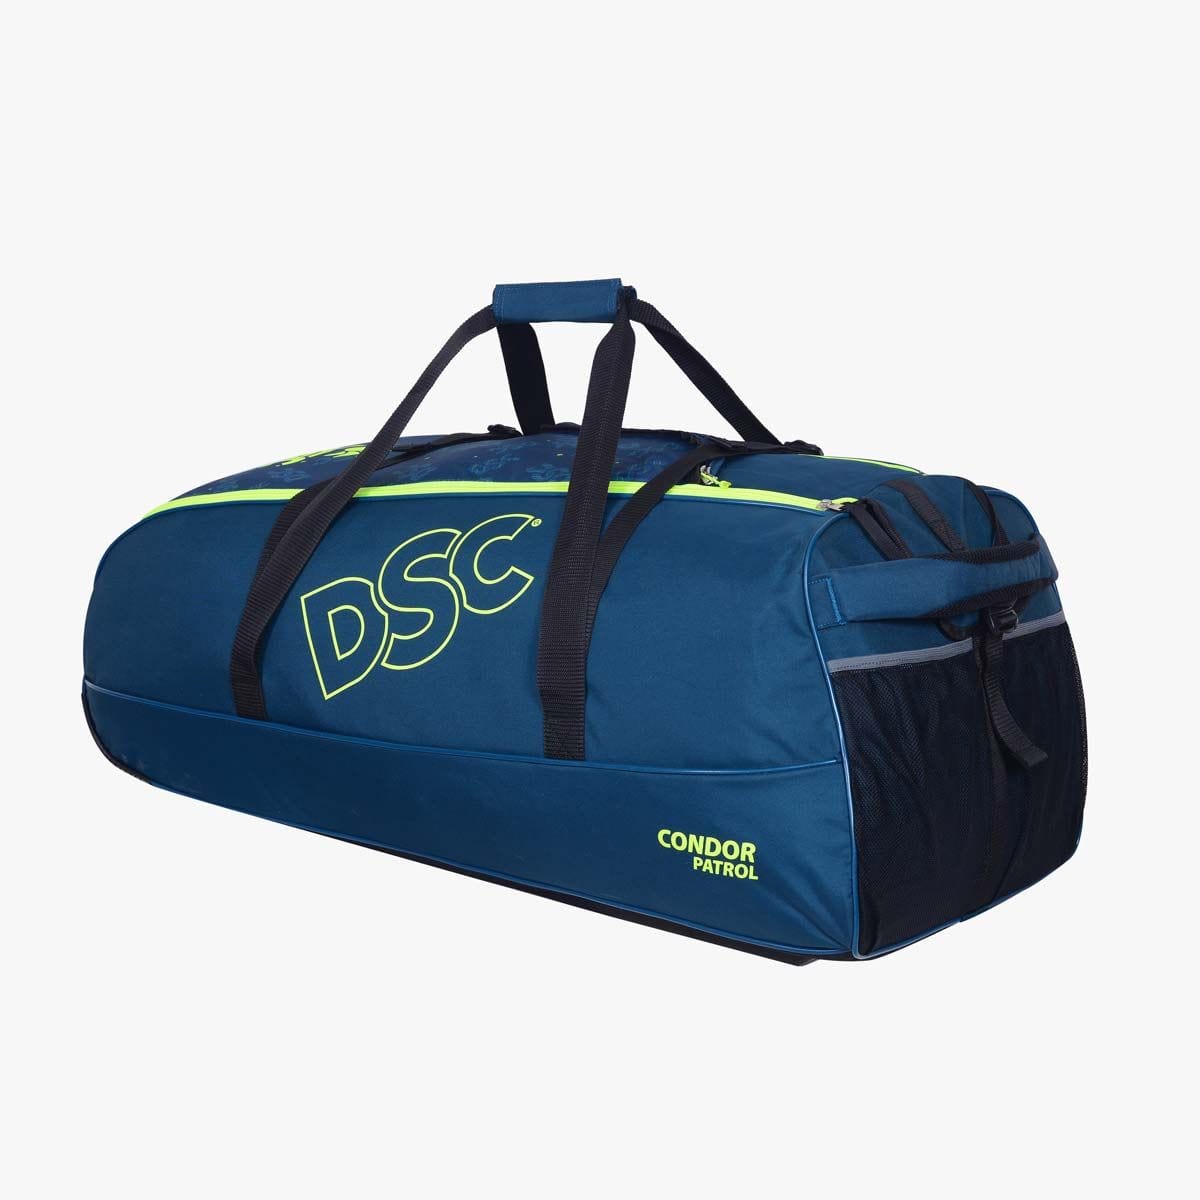 Adidas Cricket Bags DSC Condor Patrol Wheels Cricket Bag